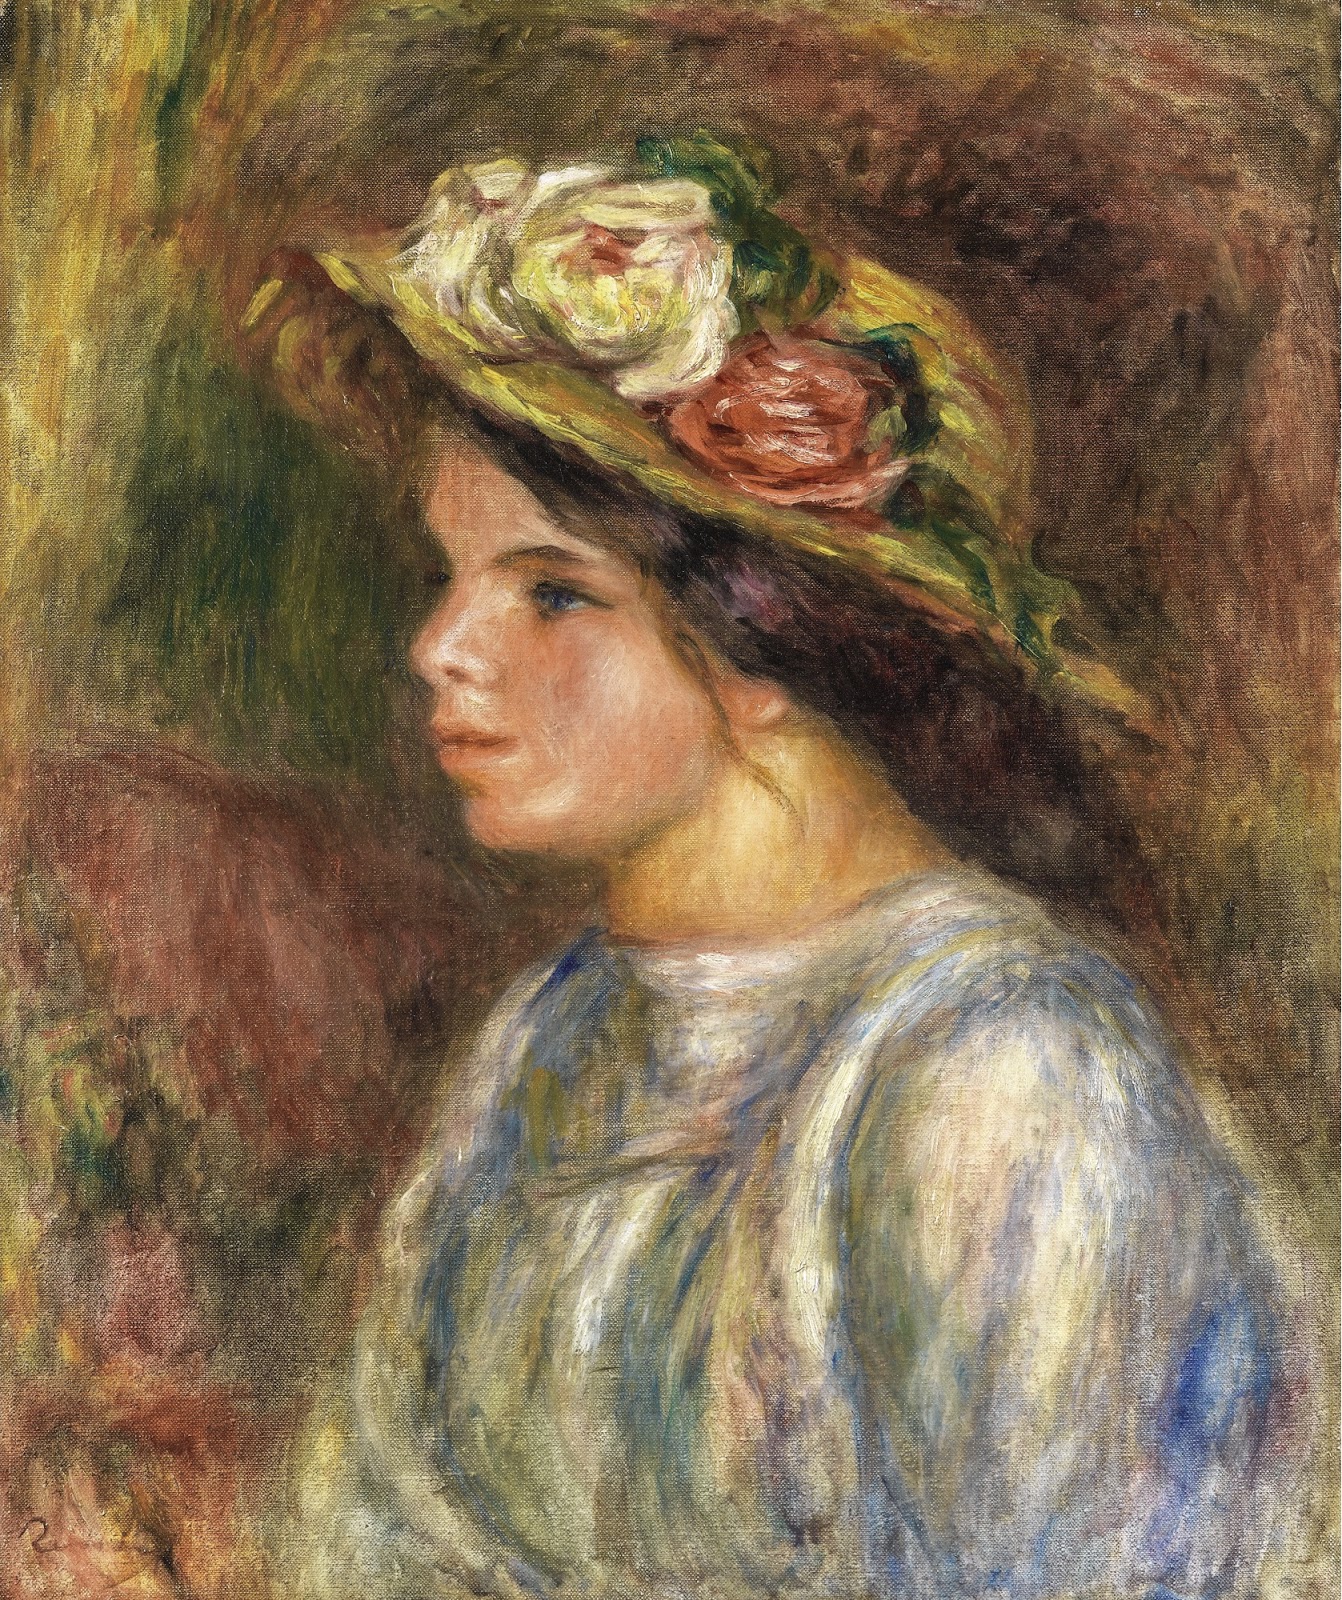 Pierre+Auguste+Renoir-1841-1-19 (801).jpg